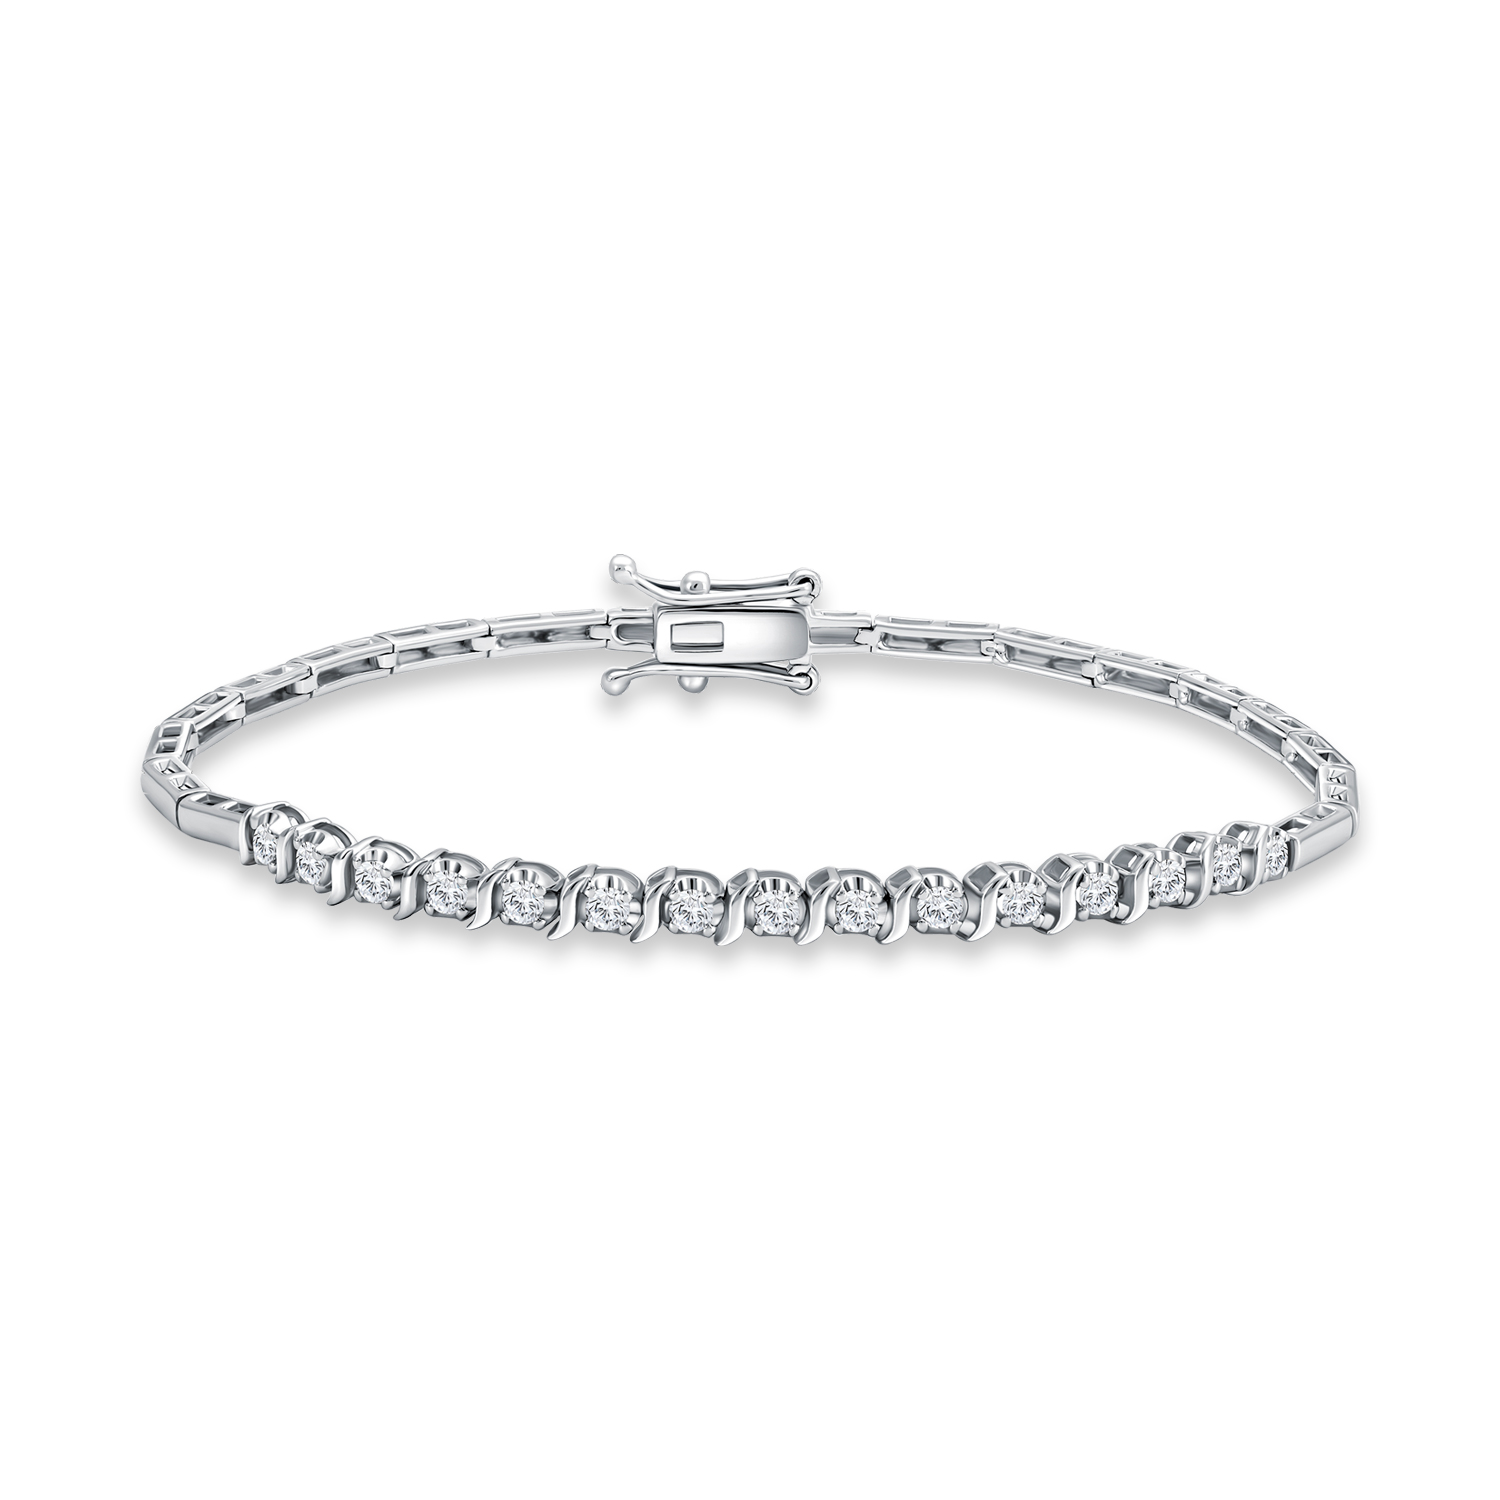 Bracelets: Borrow Wedding Jewelry / Borrow Bridal Jewelry - Our Bracelets